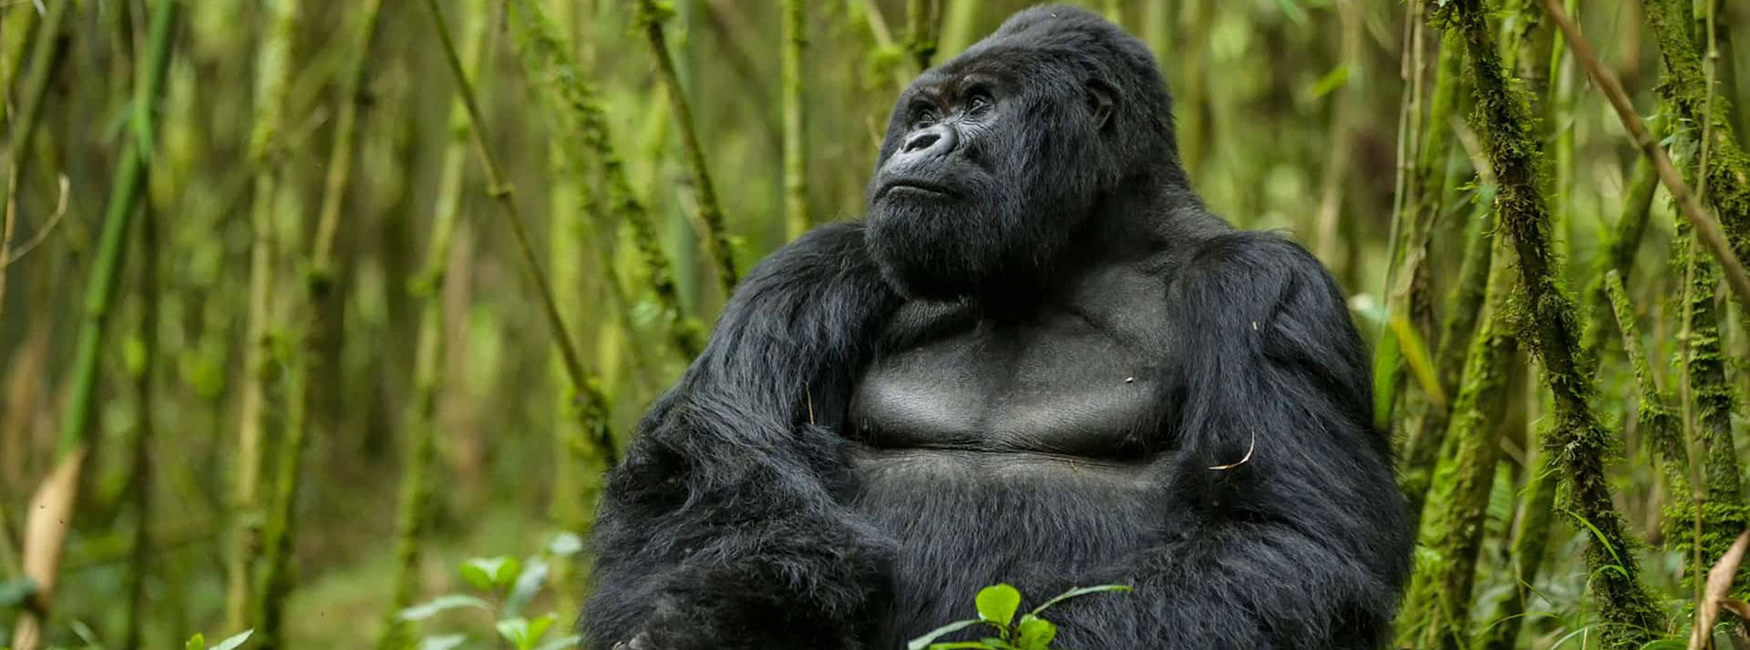 9 Days Rwanda Safari Tour | Explore All primates, wildlife & culture 